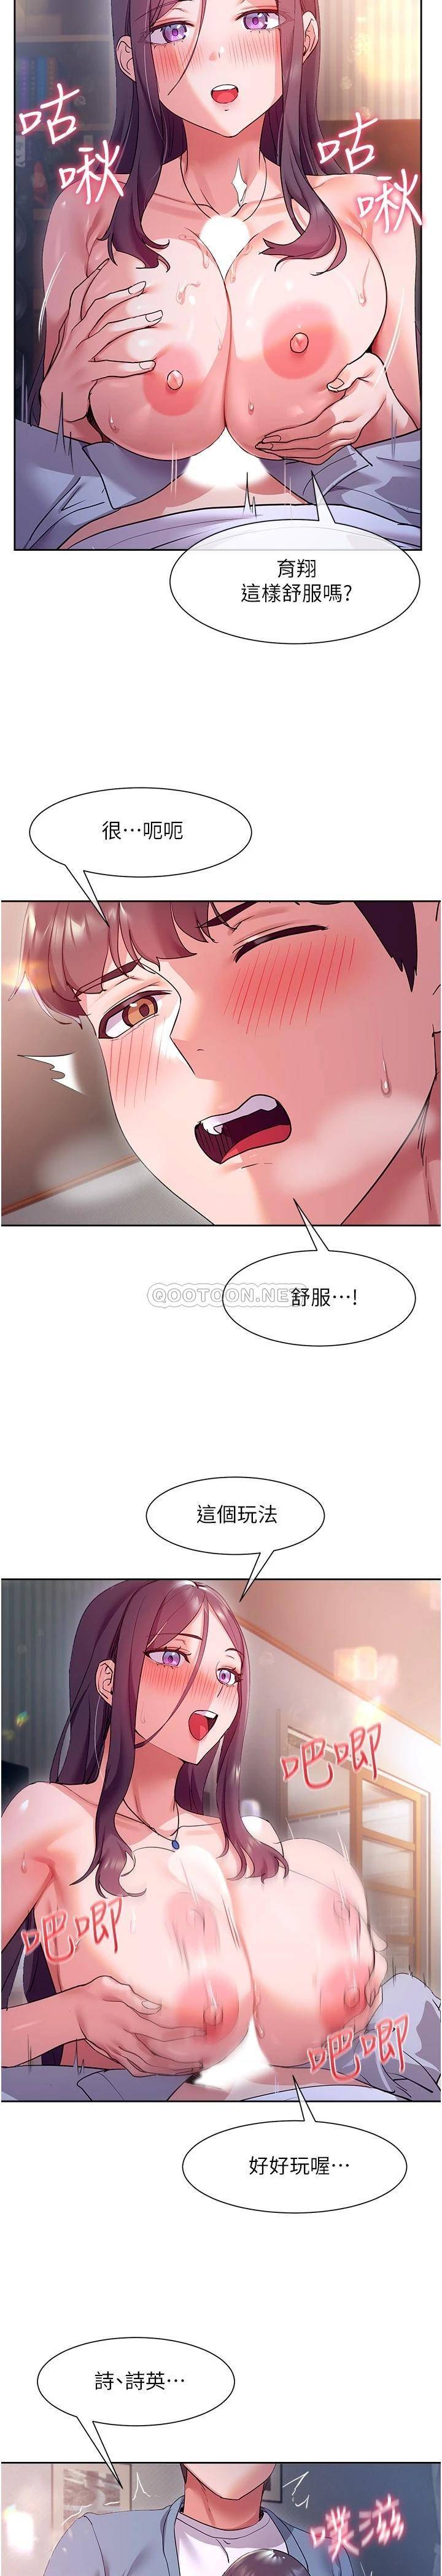 韩国污漫画 現上教學 第12话让你体验乳交的快感! 26